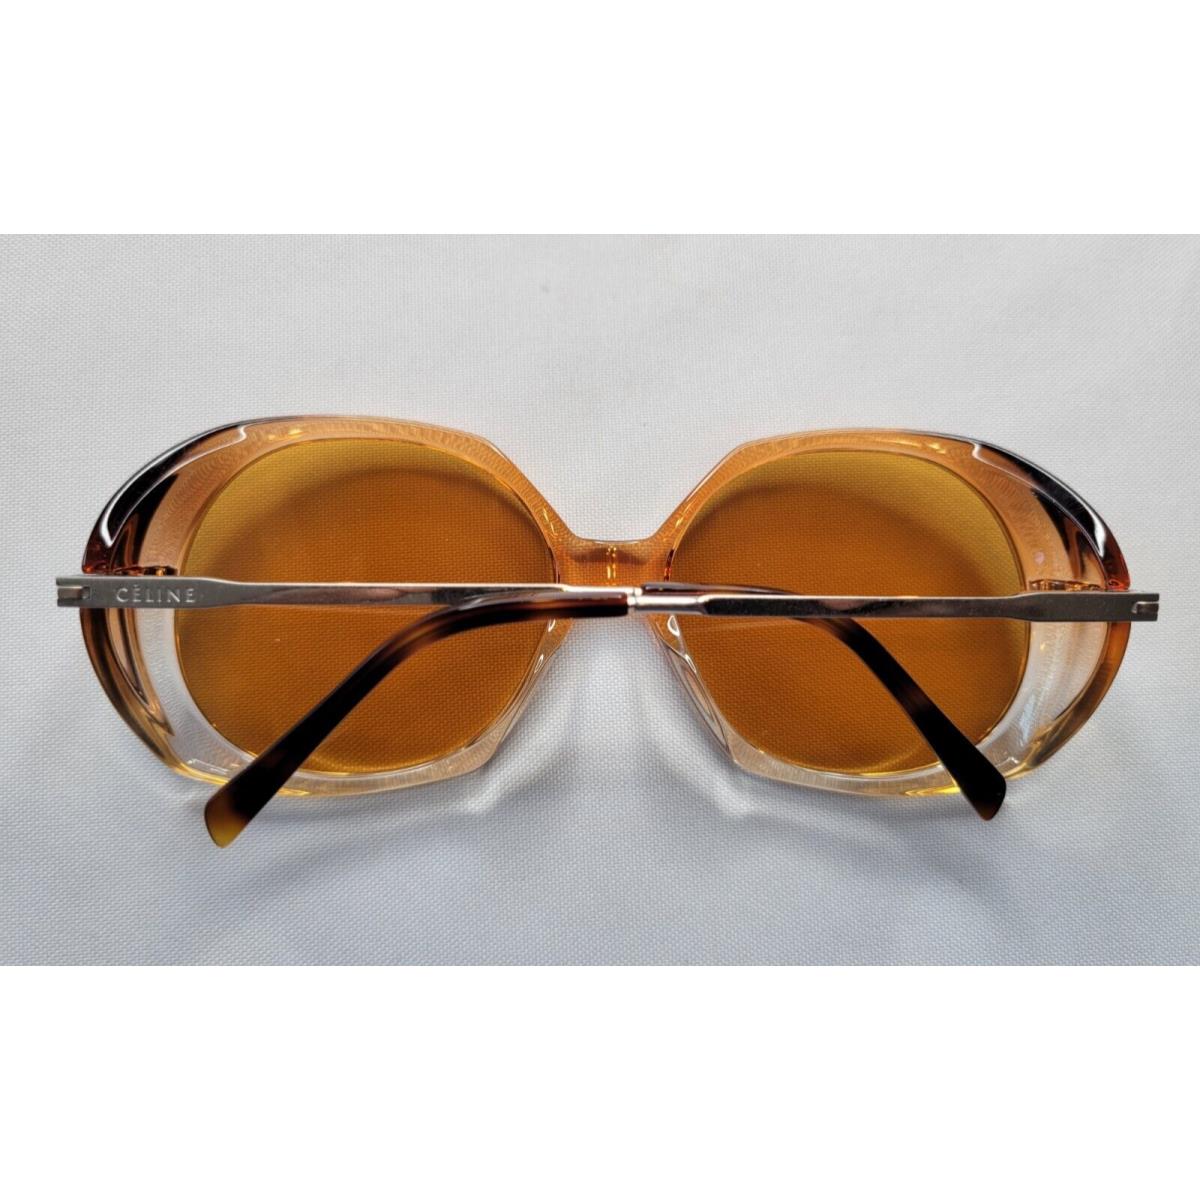 Celine sunglasses  - Brown/Silver Frame, Gray Lens 2